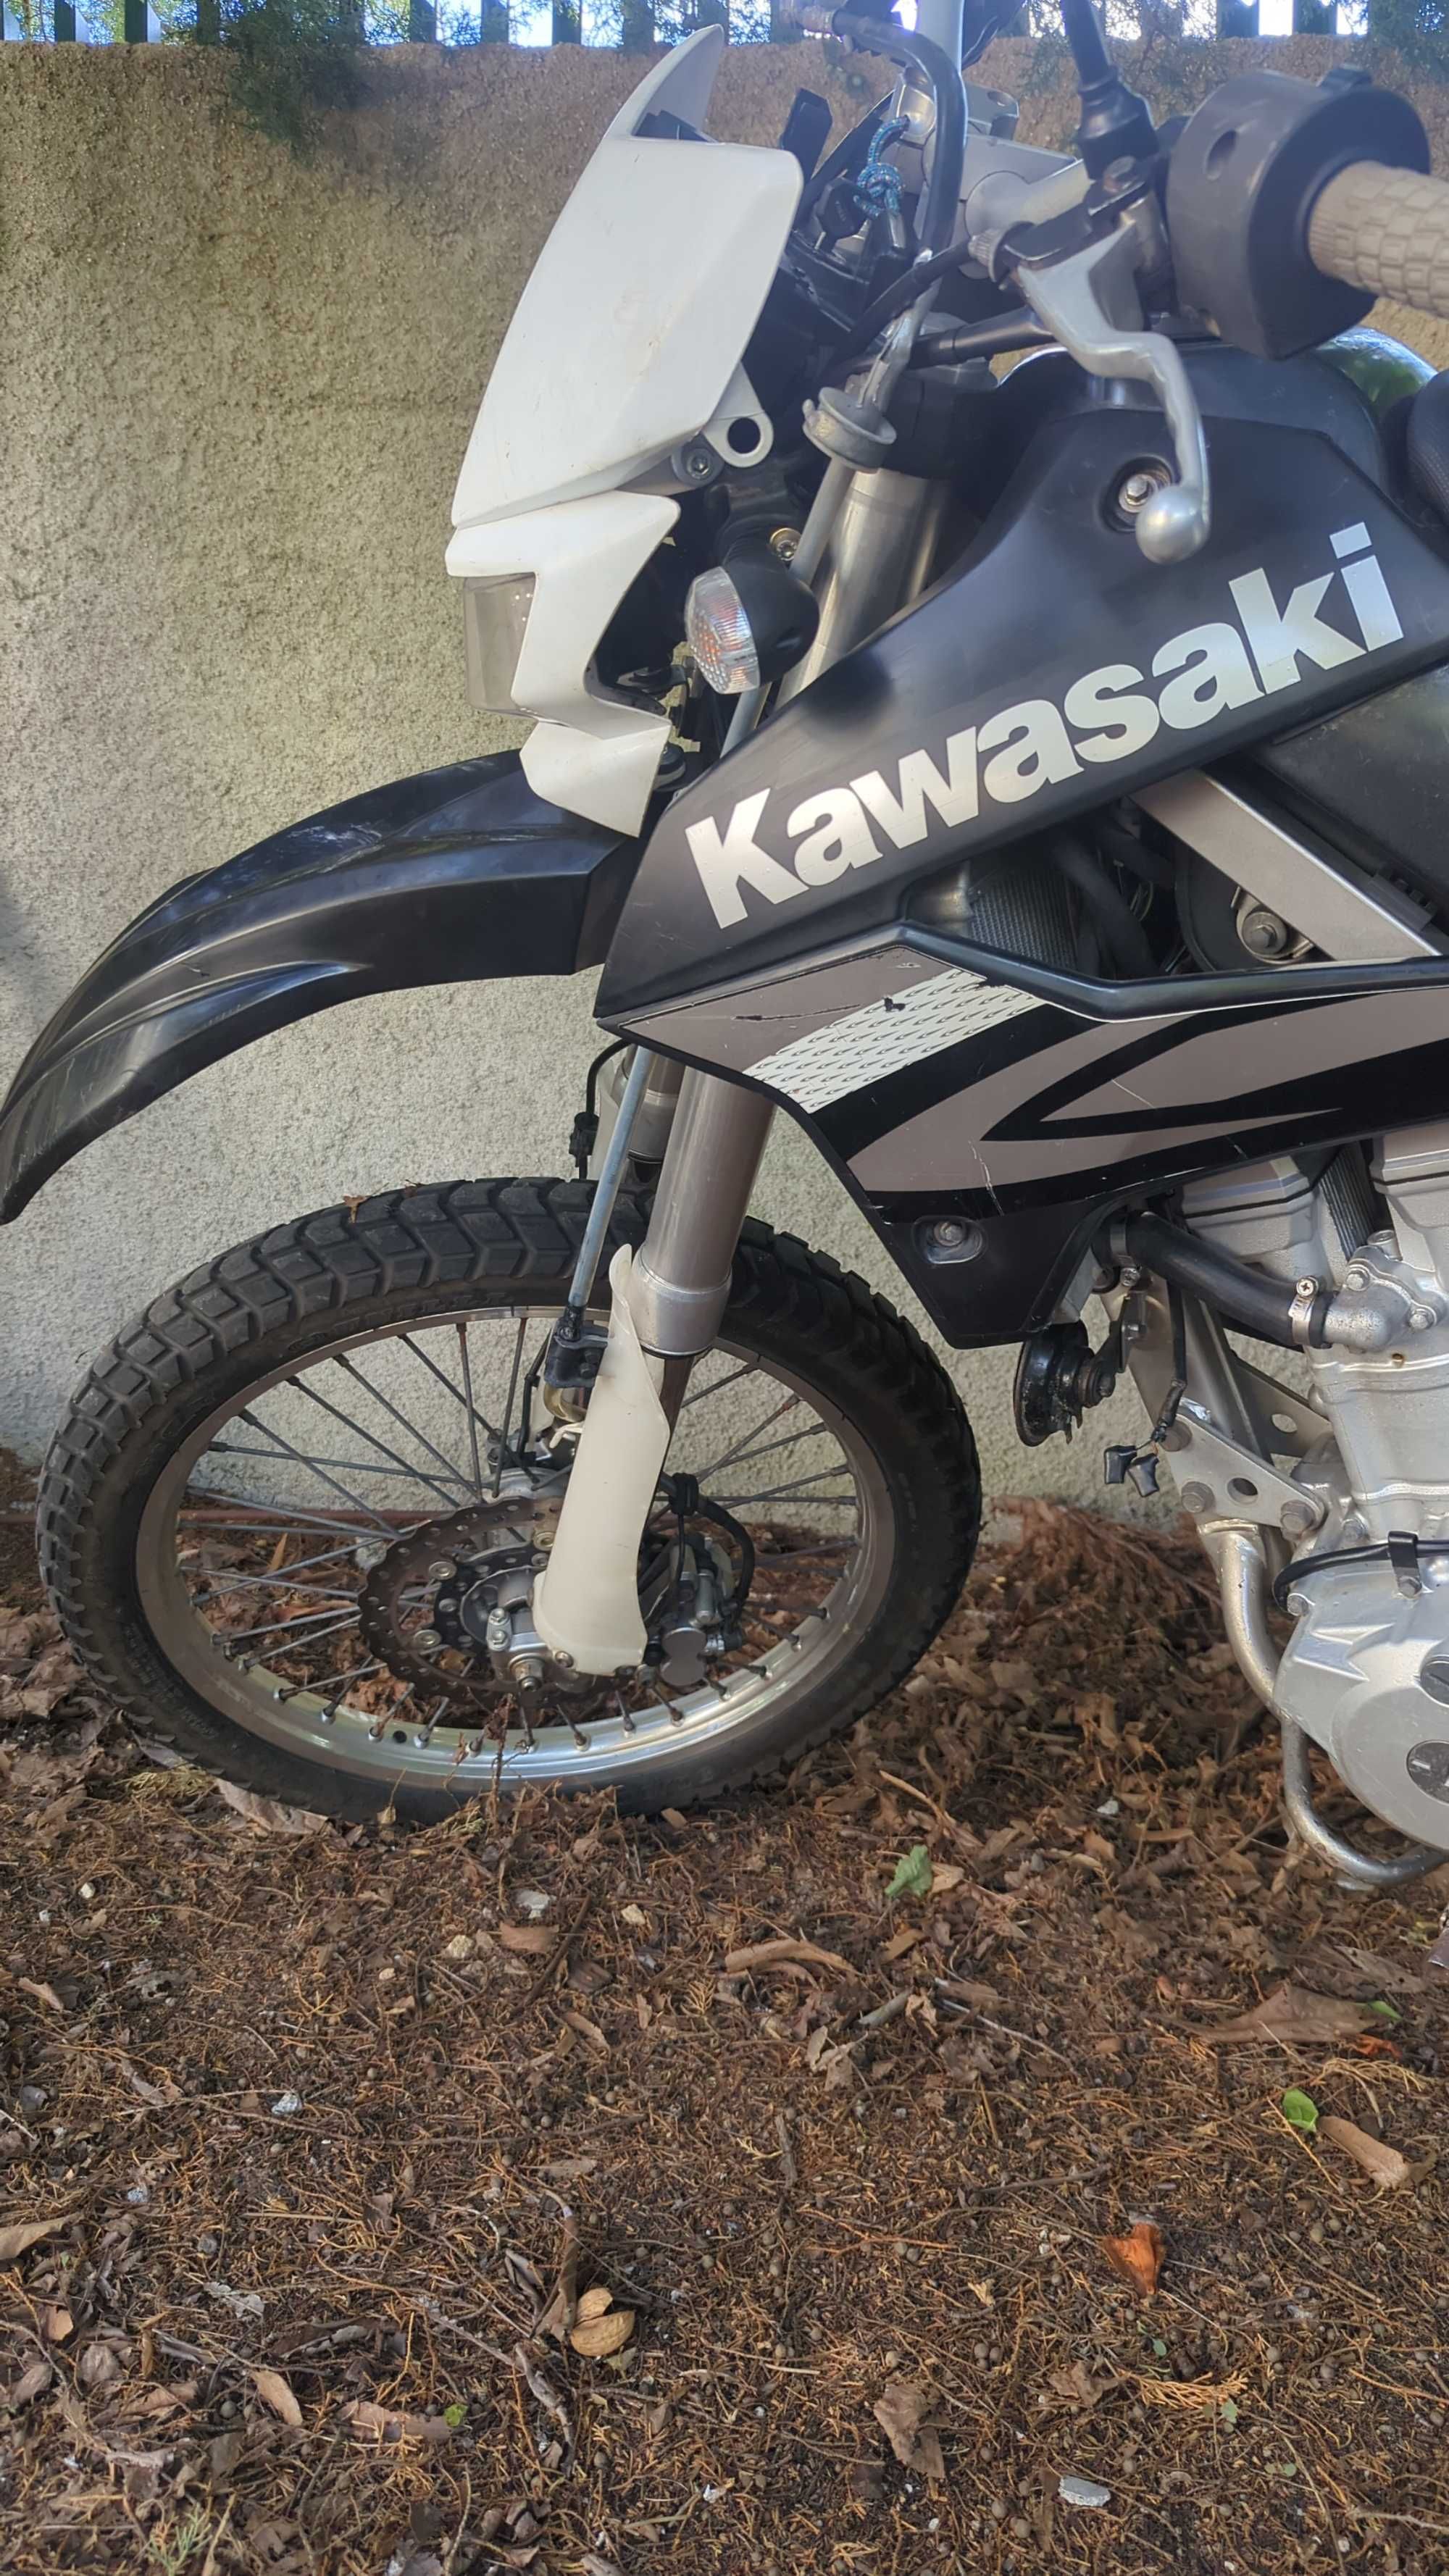 Kawasaki Klx 250 S de injeção eletronica (sem trocas e preço fixo)